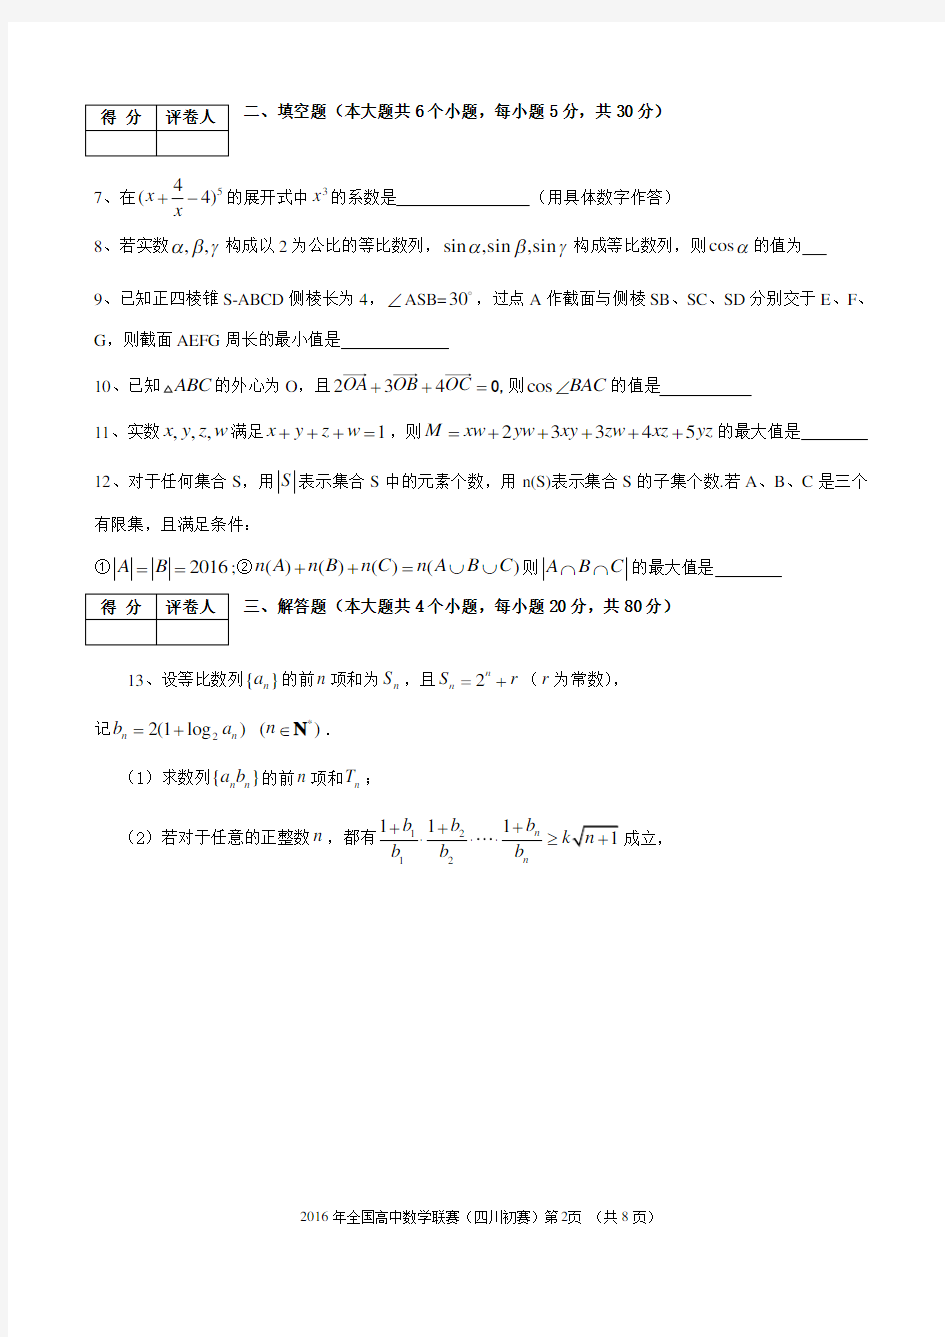 2016年全国高中数学联赛(四川)初赛试题及答案